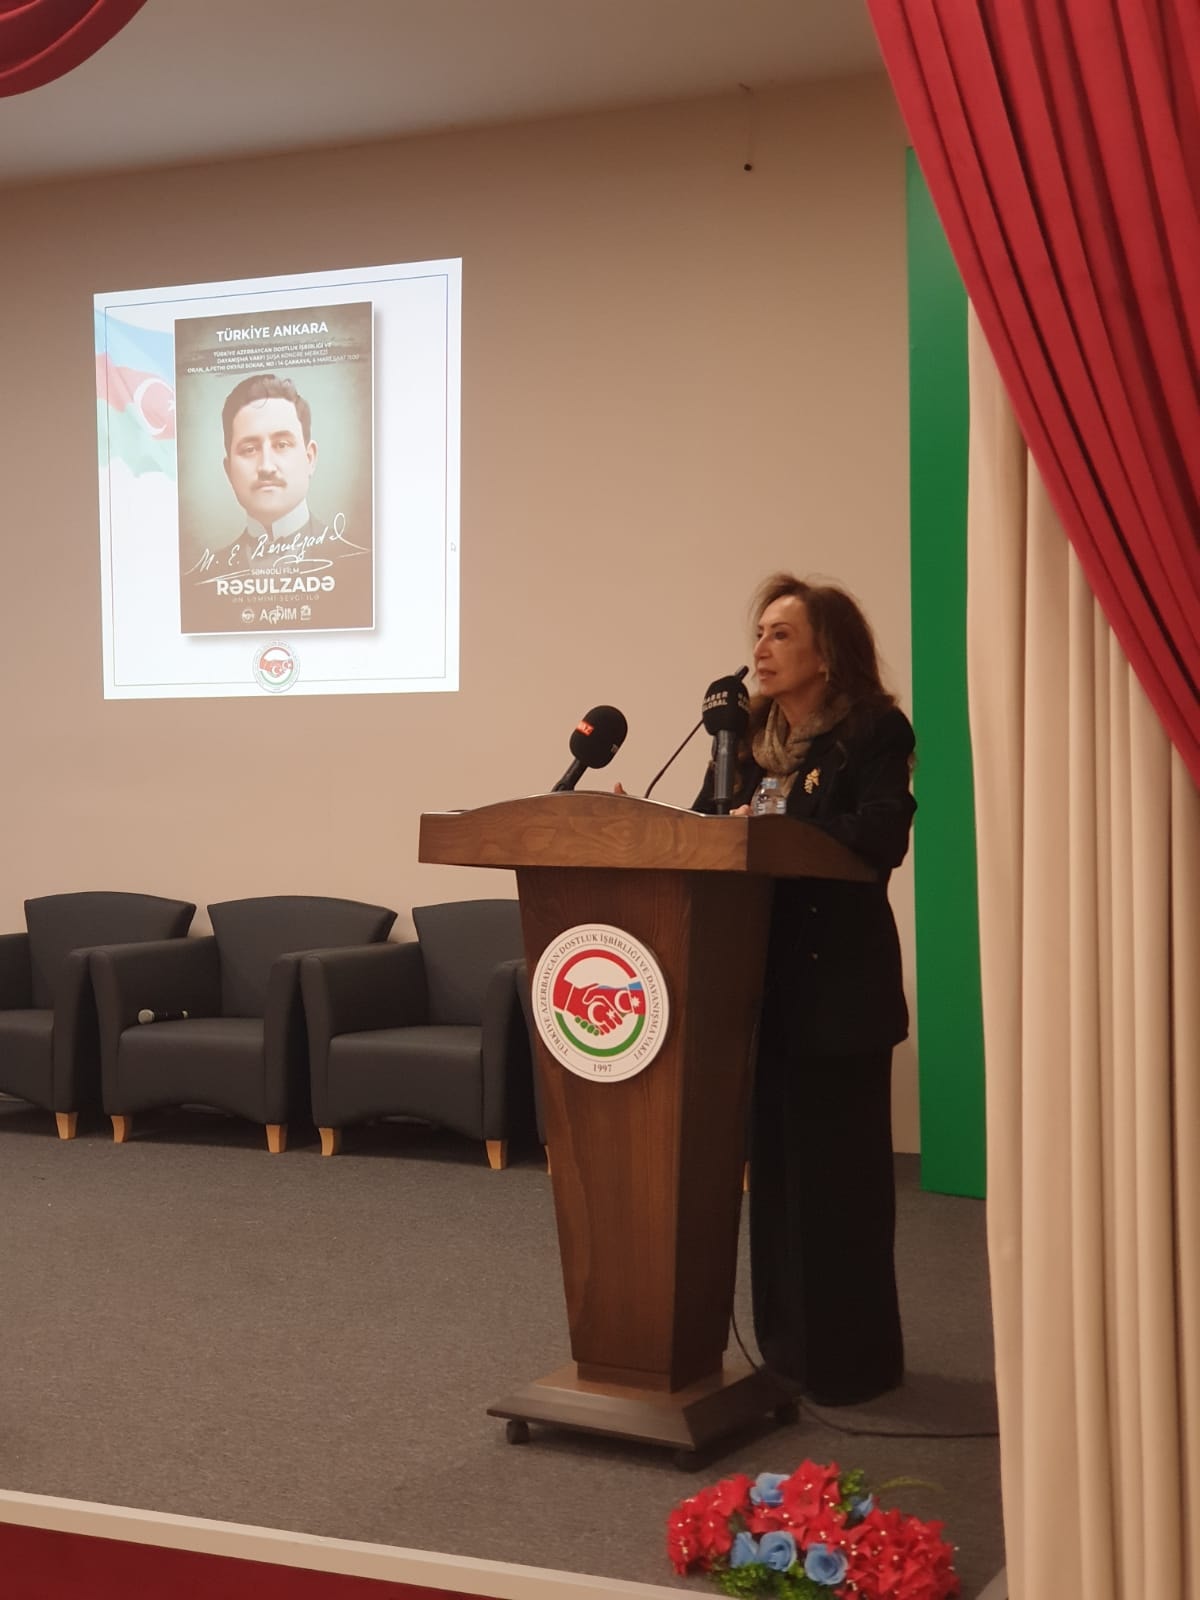 TADİV Şuşa Kongre Merkezi'nde Mehmet Emin Resulzade'nin Hayatını Konu Alan Belgesel Film İzlecilerle Buluştu